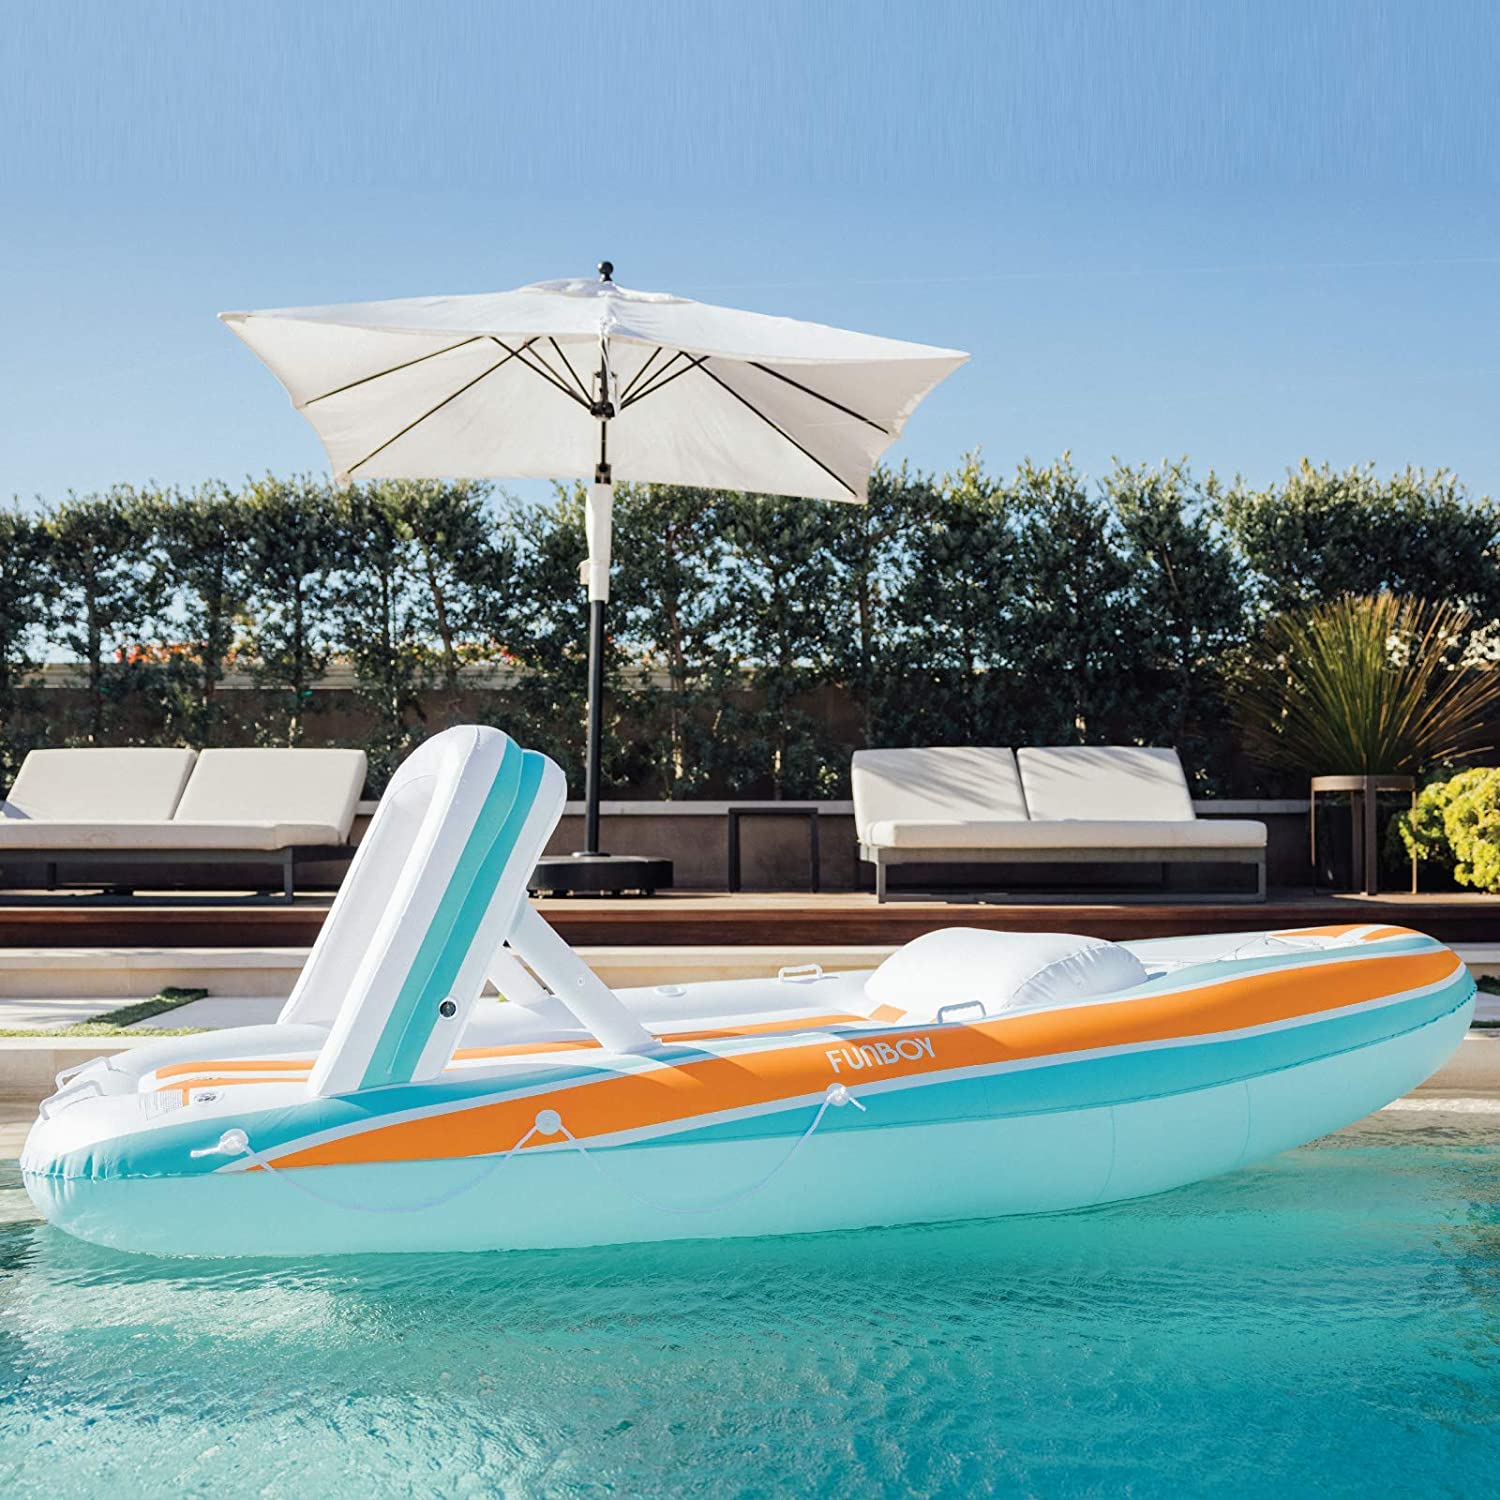 FUNBOY Giant Inflatable Luxury Mega Yacht Pool Float